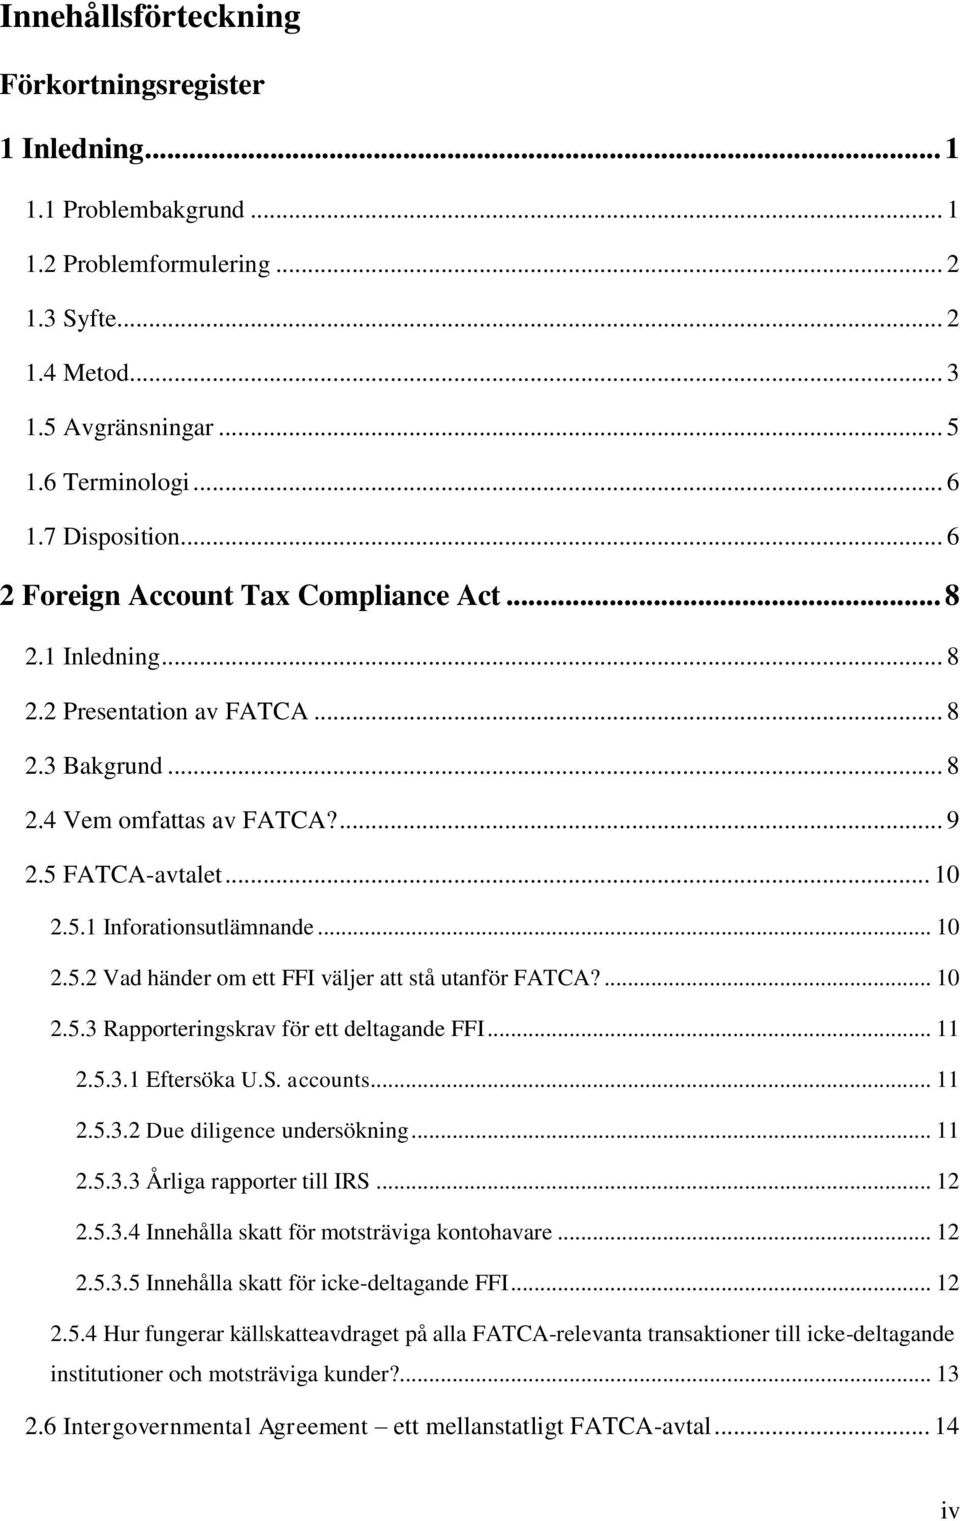 .. 10 2.5.2 Vad händer om ett FFI väljer att stå utanför FATCA?... 10 2.5.3 Rapporteringskrav för ett deltagande FFI... 11 2.5.3.1 Eftersöka U.S. accounts... 11 2.5.3.2 Due diligence undersökning.